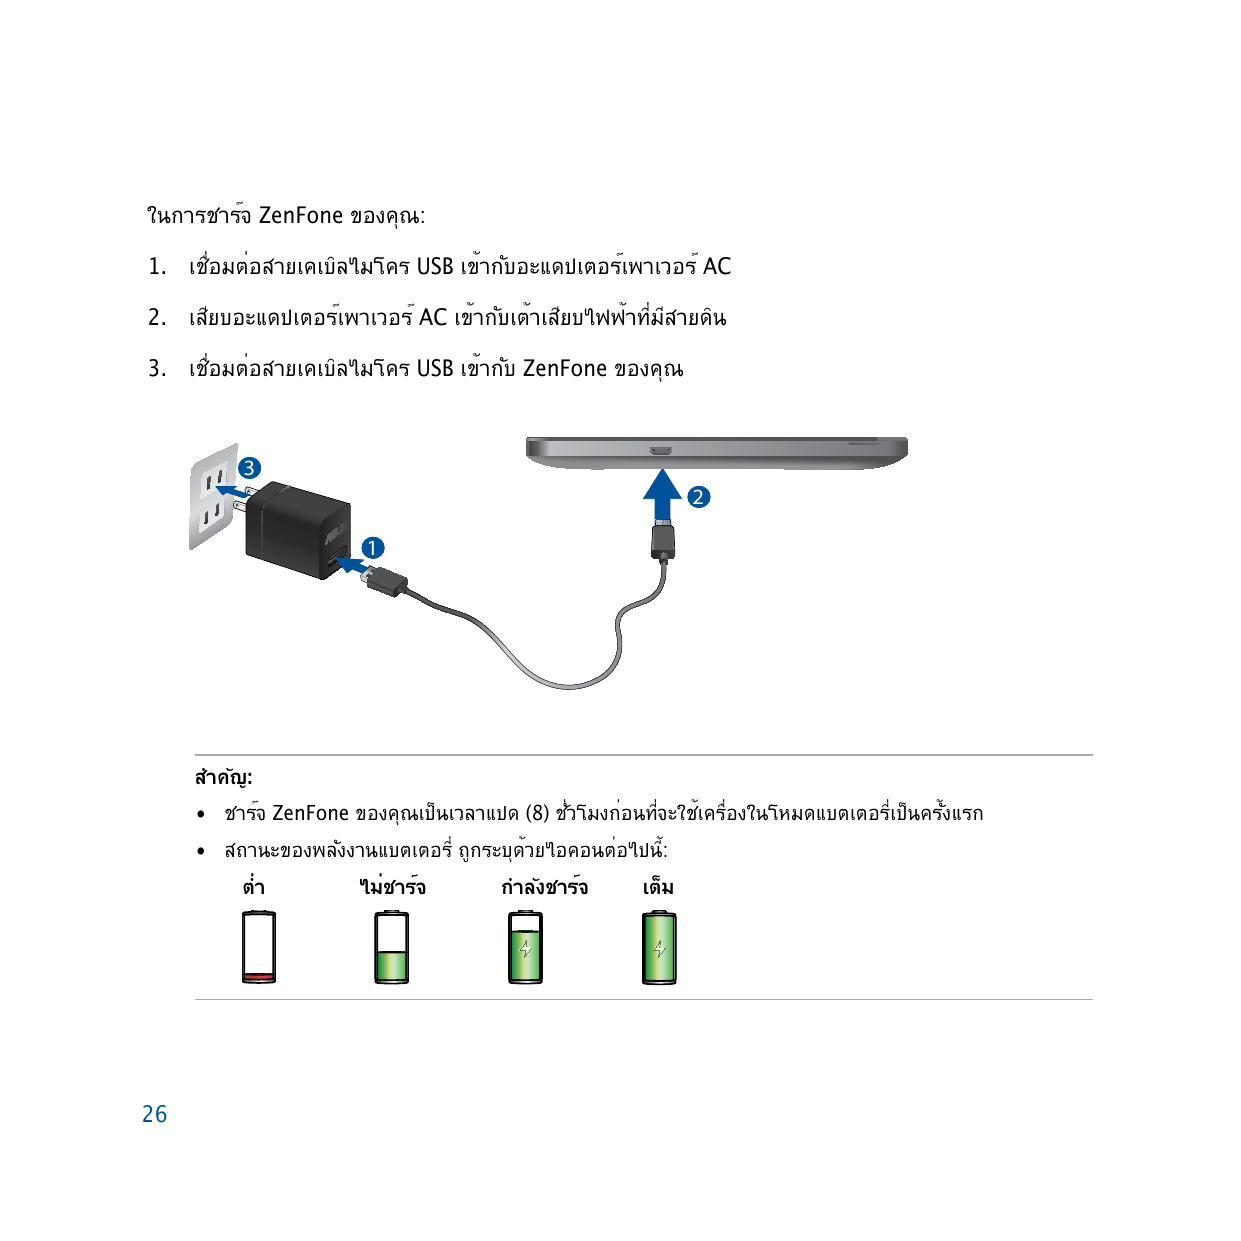 ในการชาร์จ ZenFone ของคุณ:1.  เชื่อมต่อสายเคเบิลไมโคร USB เข้ากับอะแดปเตอร์เพาเวอร์ AC2.  เสียบอะแดปเตอร์เพาเวอร์ AC เข้ากับเต้า